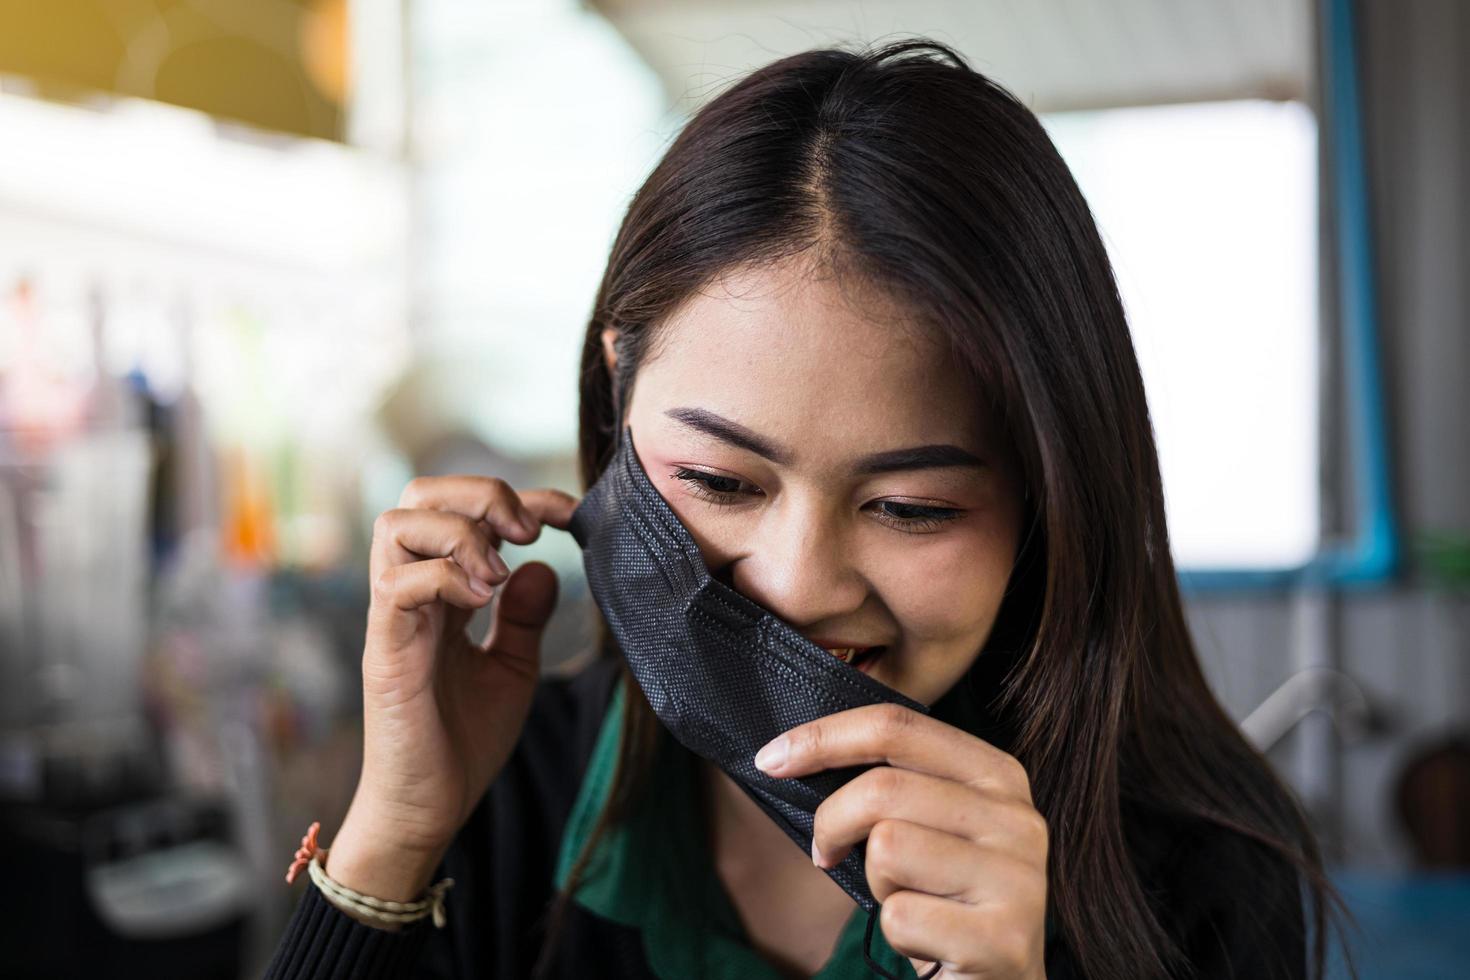 prenez un portrait en gros plan d'une belle femme thaïlandaise sur le point d'enlever un masque noir. photo